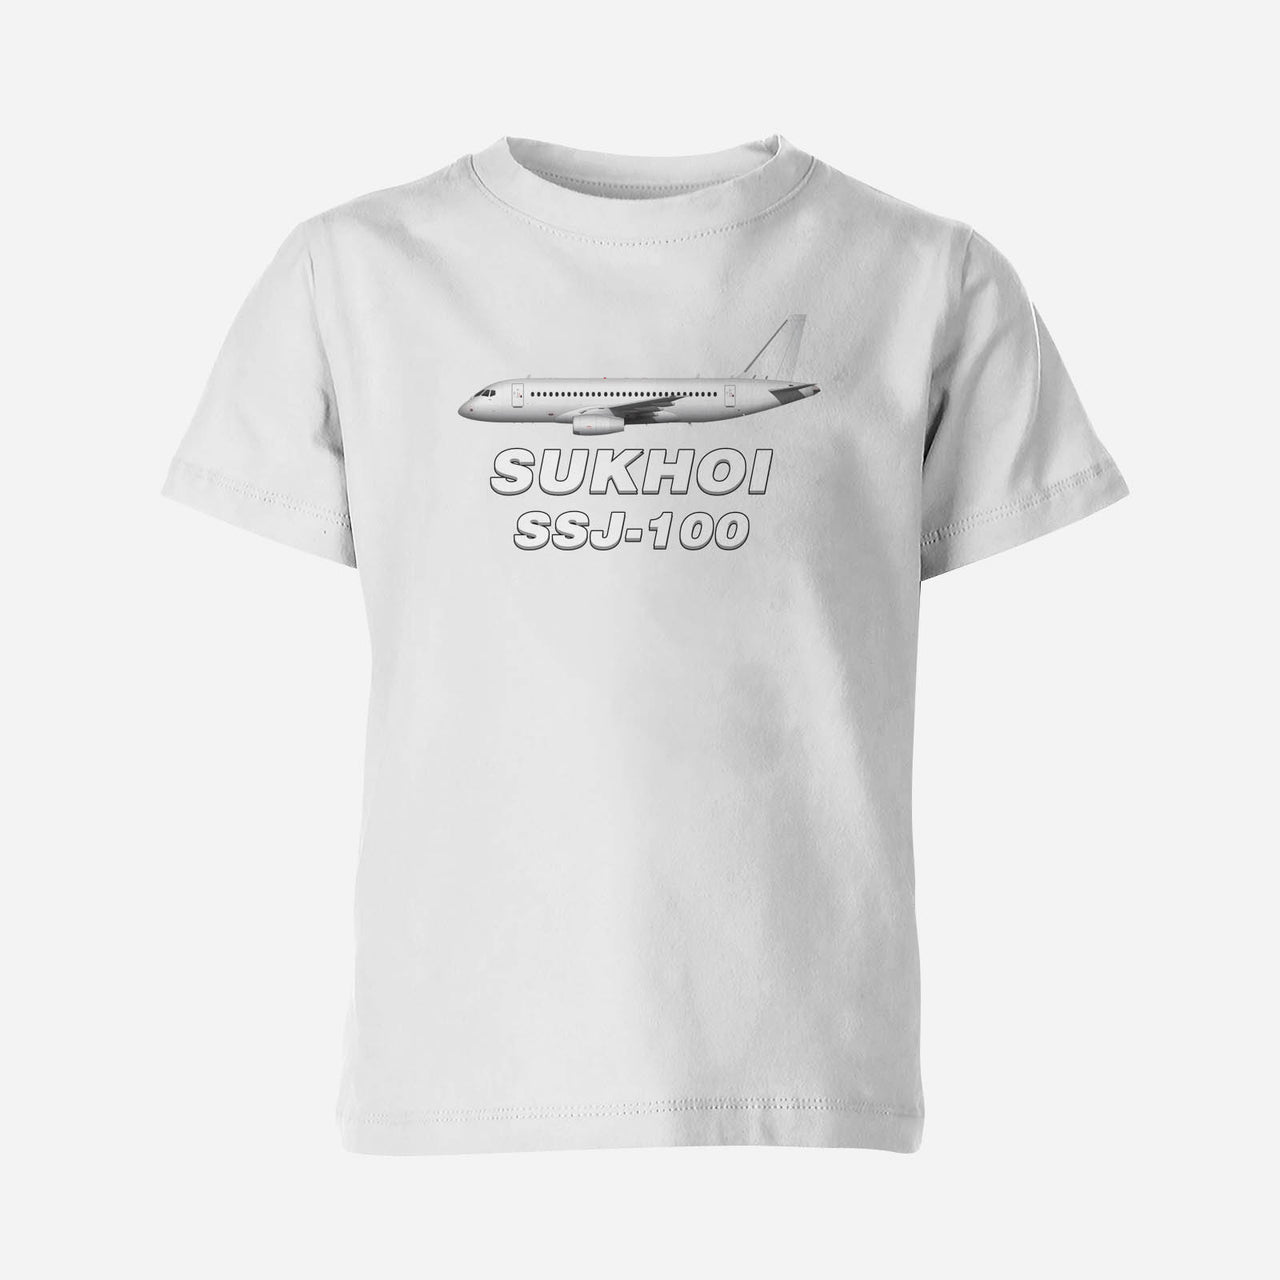 The Sukhoi Superjet 100 Designed Children T-Shirts